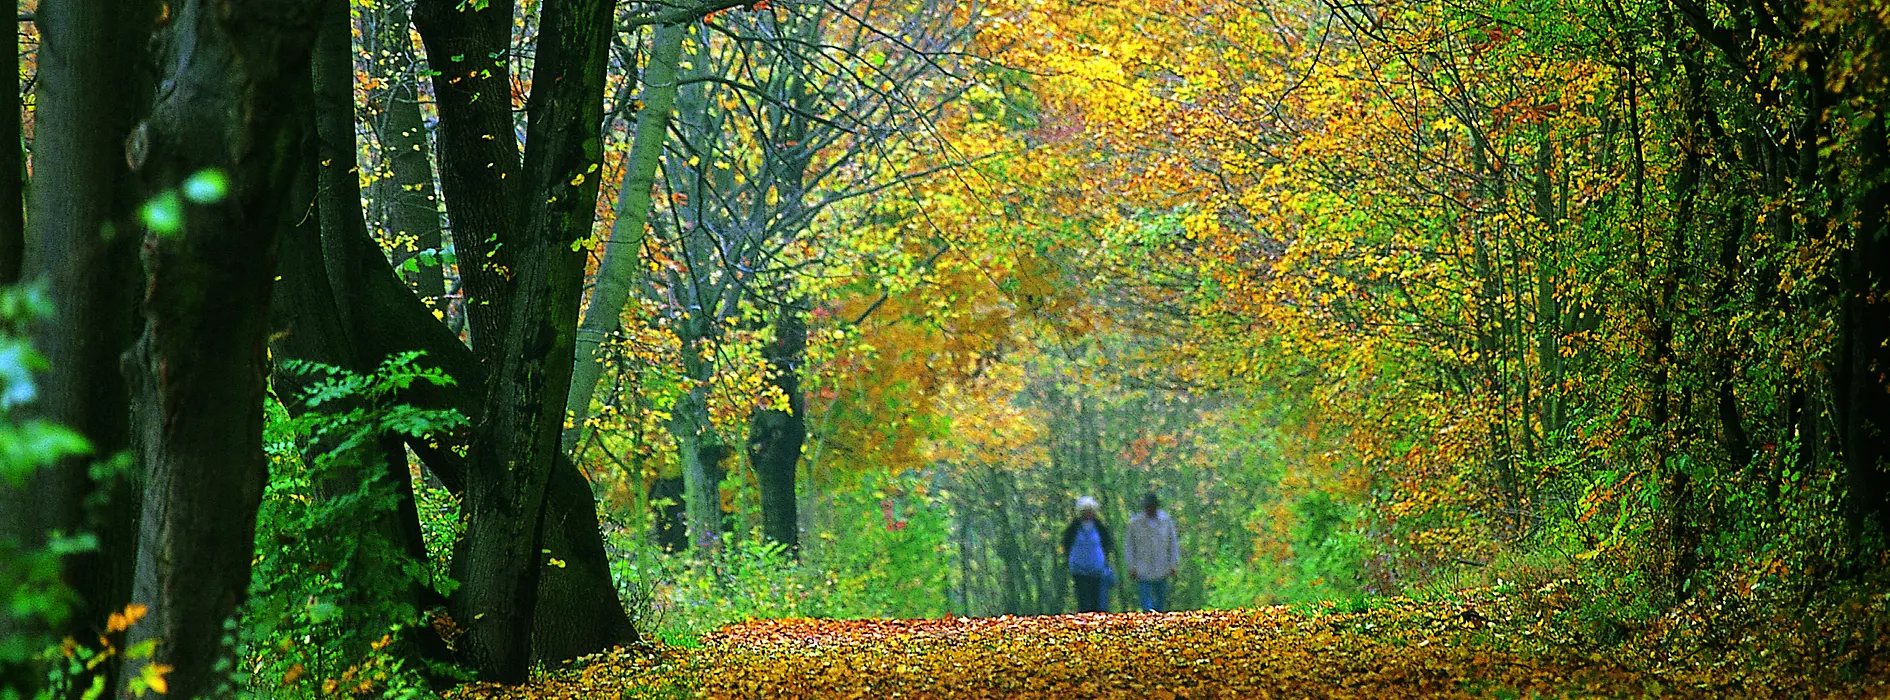 Schwarzenbergpark im Herbst